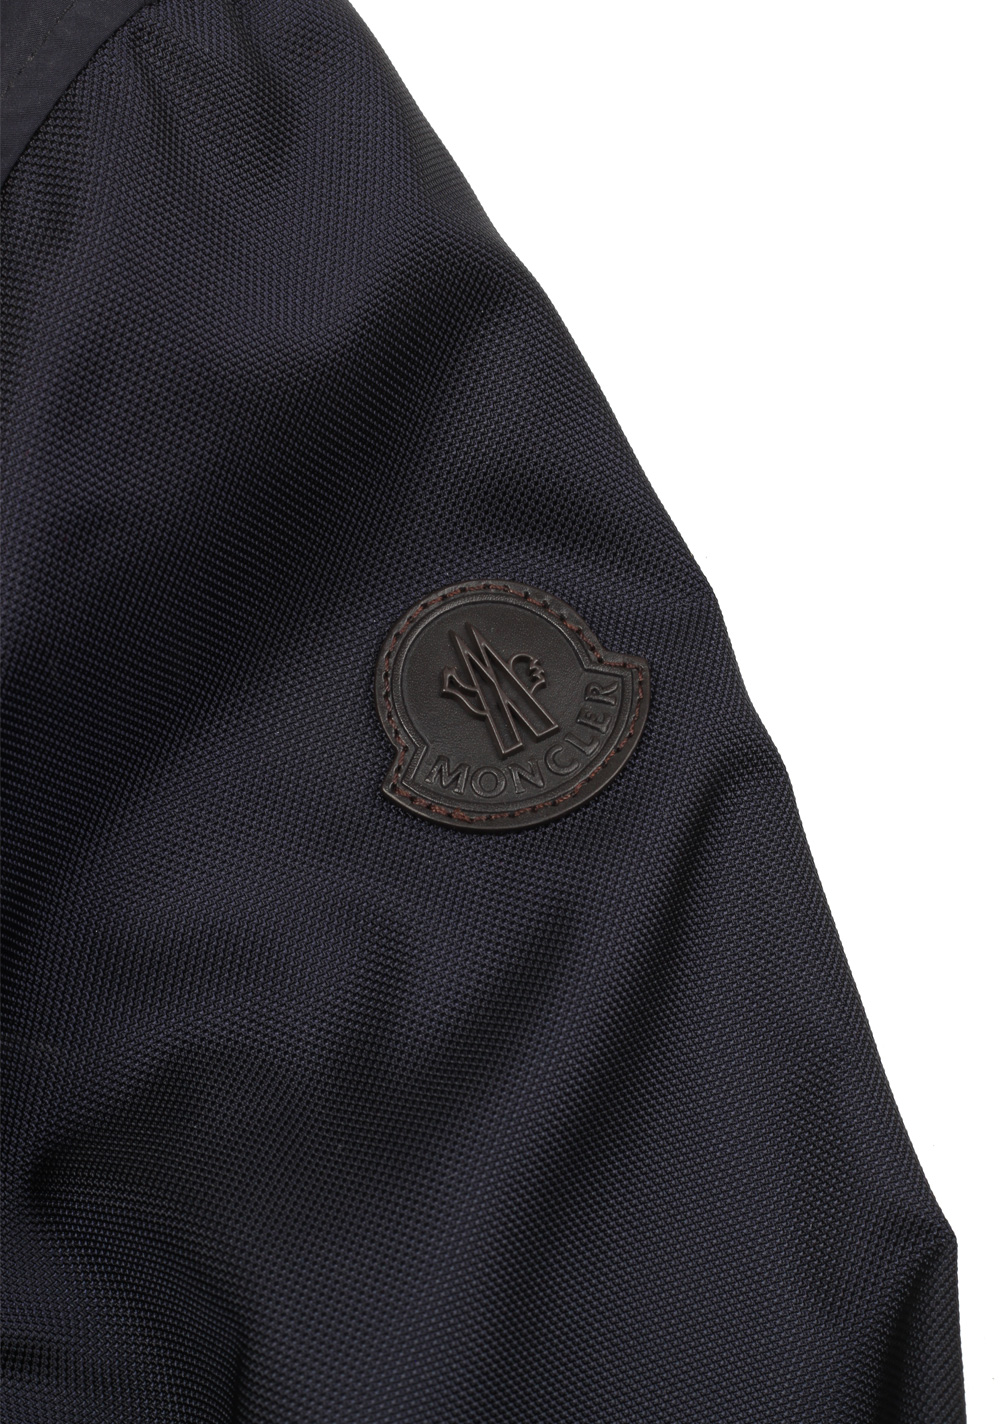 Moncler Blue Anser Zip Front Jacket Coat Size 6 / XL / 56 / 46R U.S. | Costume Limité